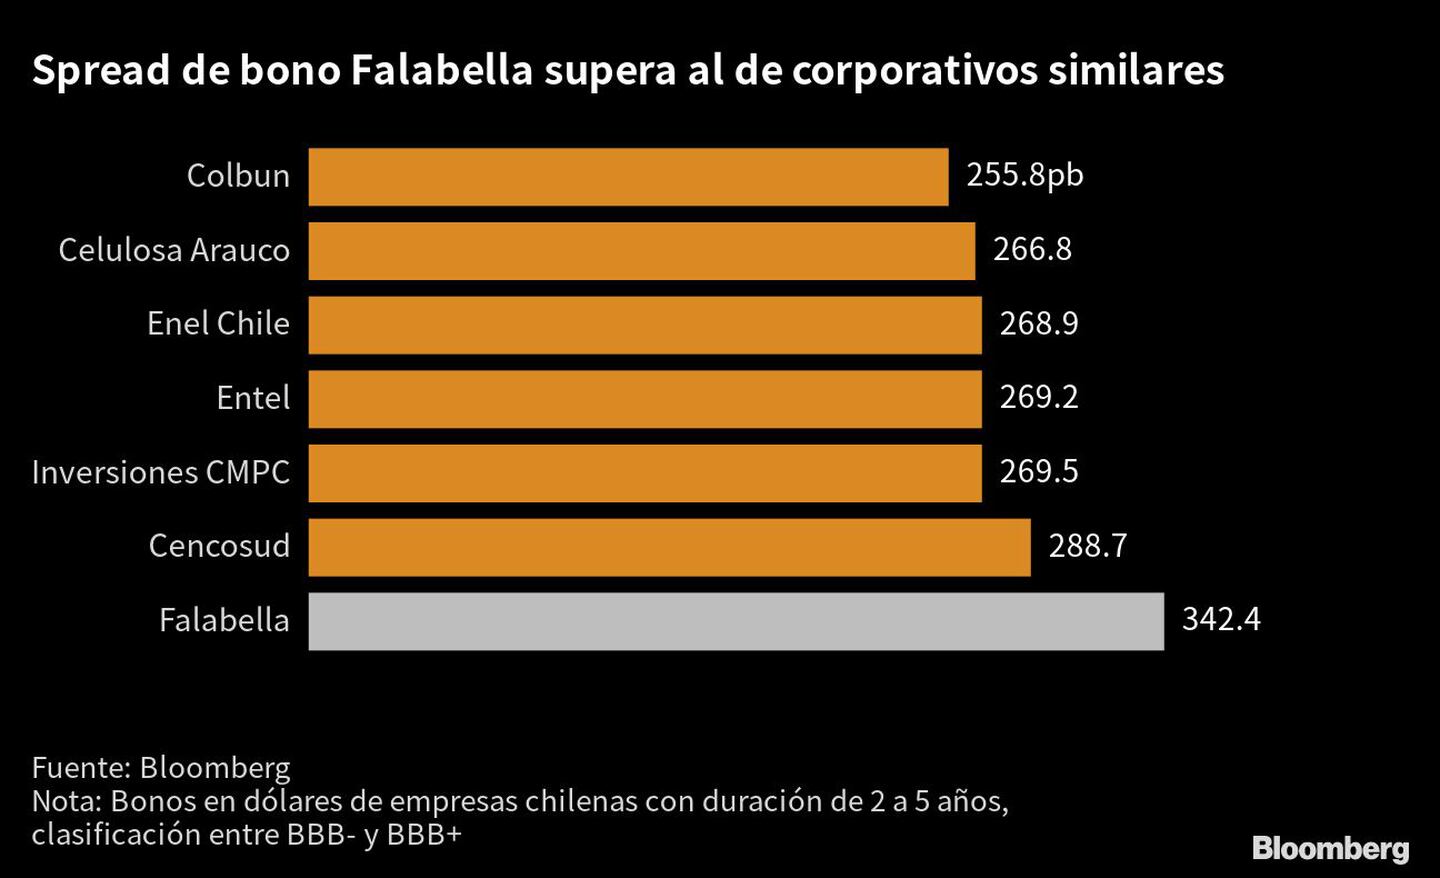 Spread de bono Falabella supera al de corporativos similares |dfd